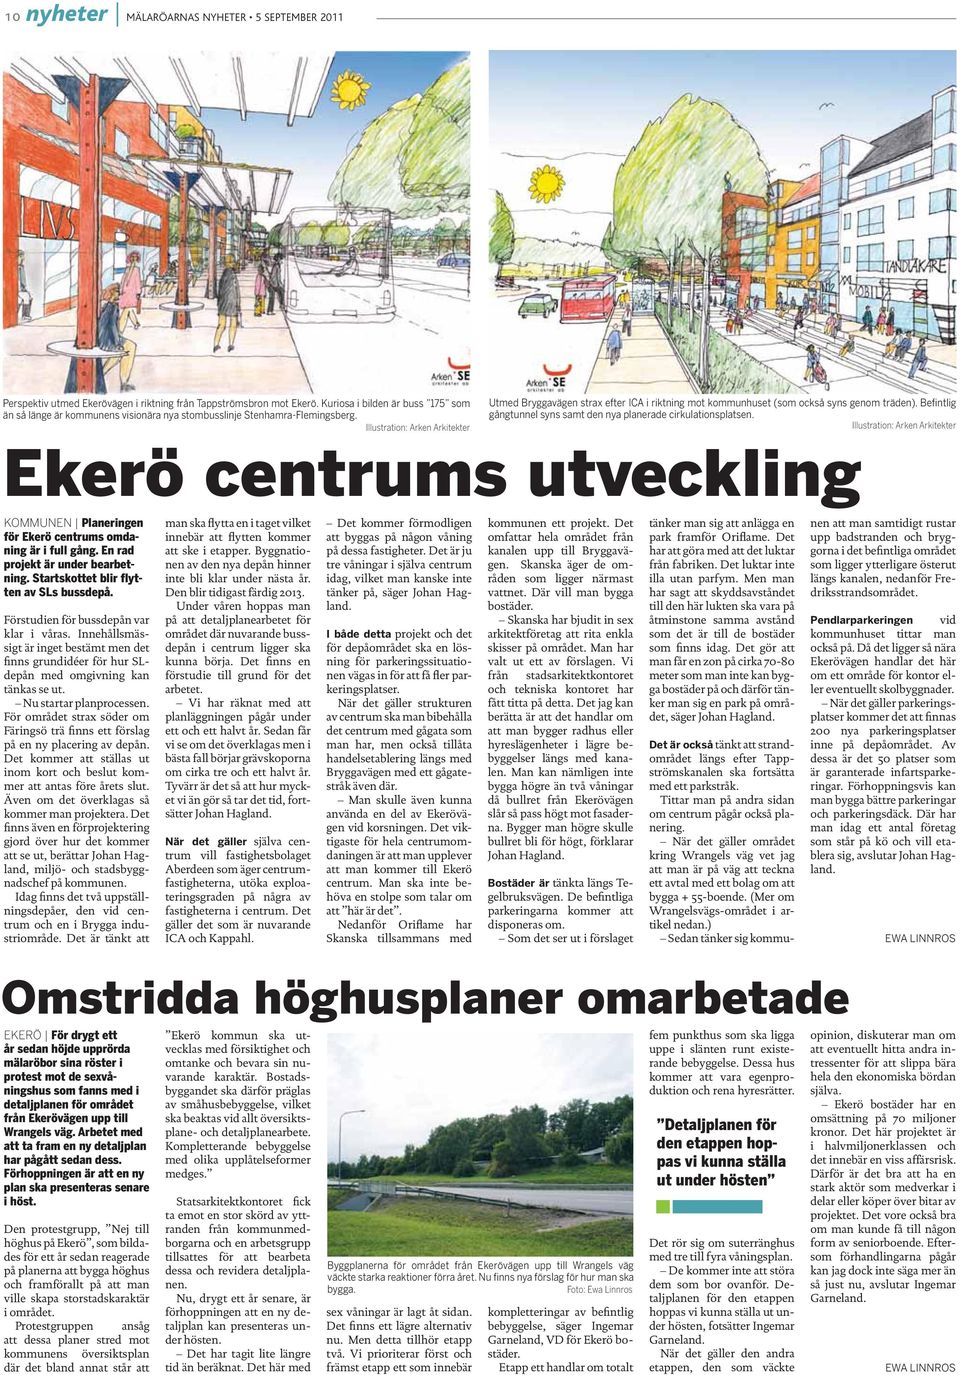 Illustration: Arken Arkitekter Ekerö centrums utveckling KOMMUNEN Planeringen för Ekerö centrums omdaning är i full gång. En rad projekt är under bearbetning.